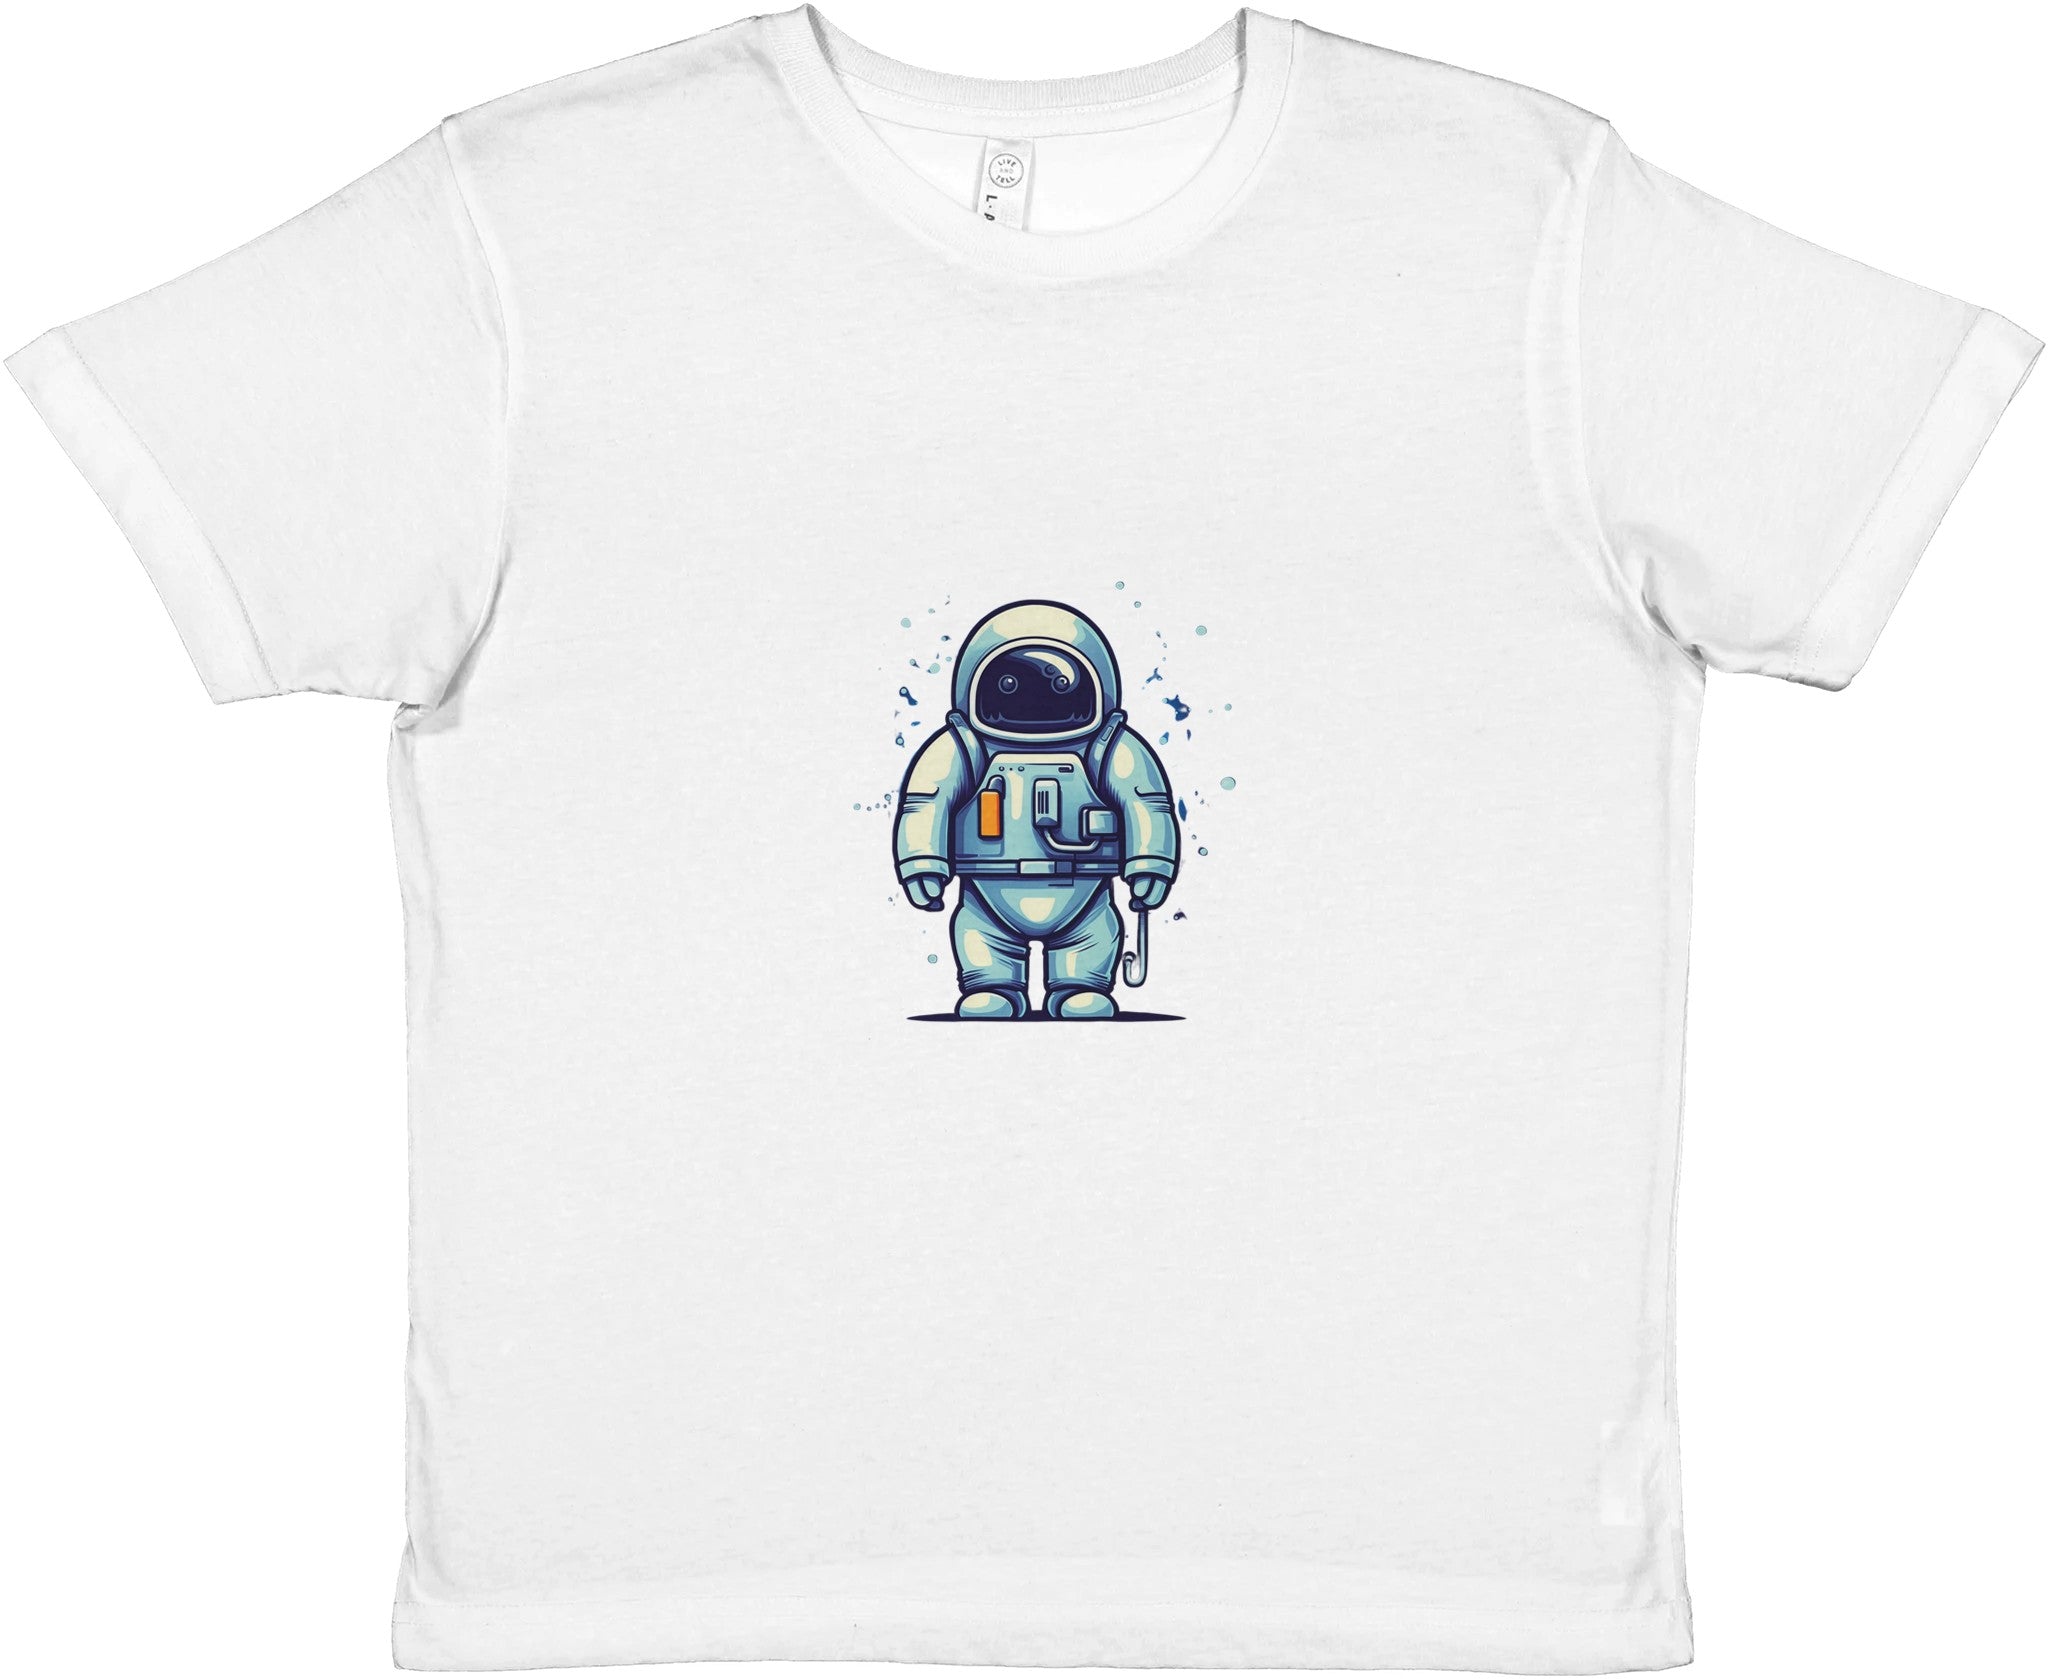 Cosmic Explorer Kids Crewneck T-shirt - Optimalprint